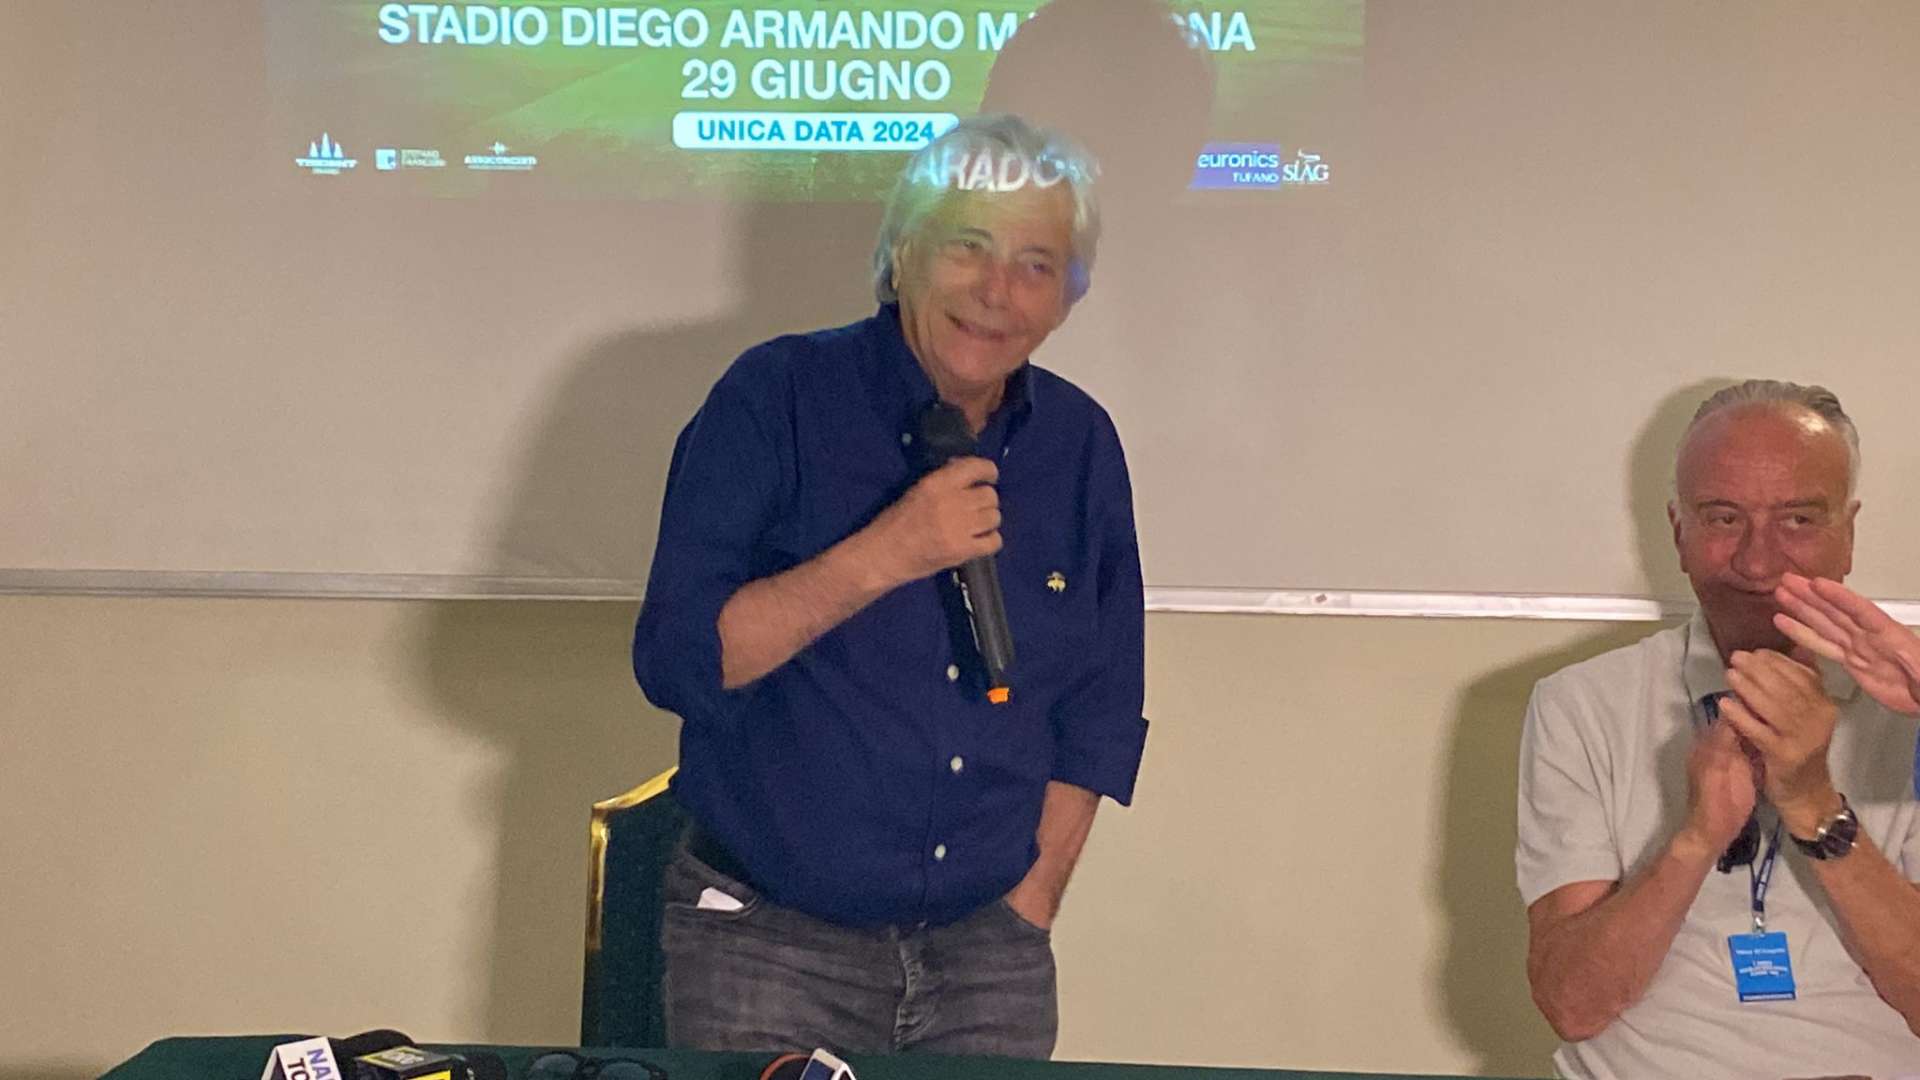 Nino D’Angelo, conferenza stampa: “Lo stadio è mio, un sogno che si avvera. L’Italia mi ha sempre ostacolato, ora Napoli è vincente: c’è un’esplosione culturale”